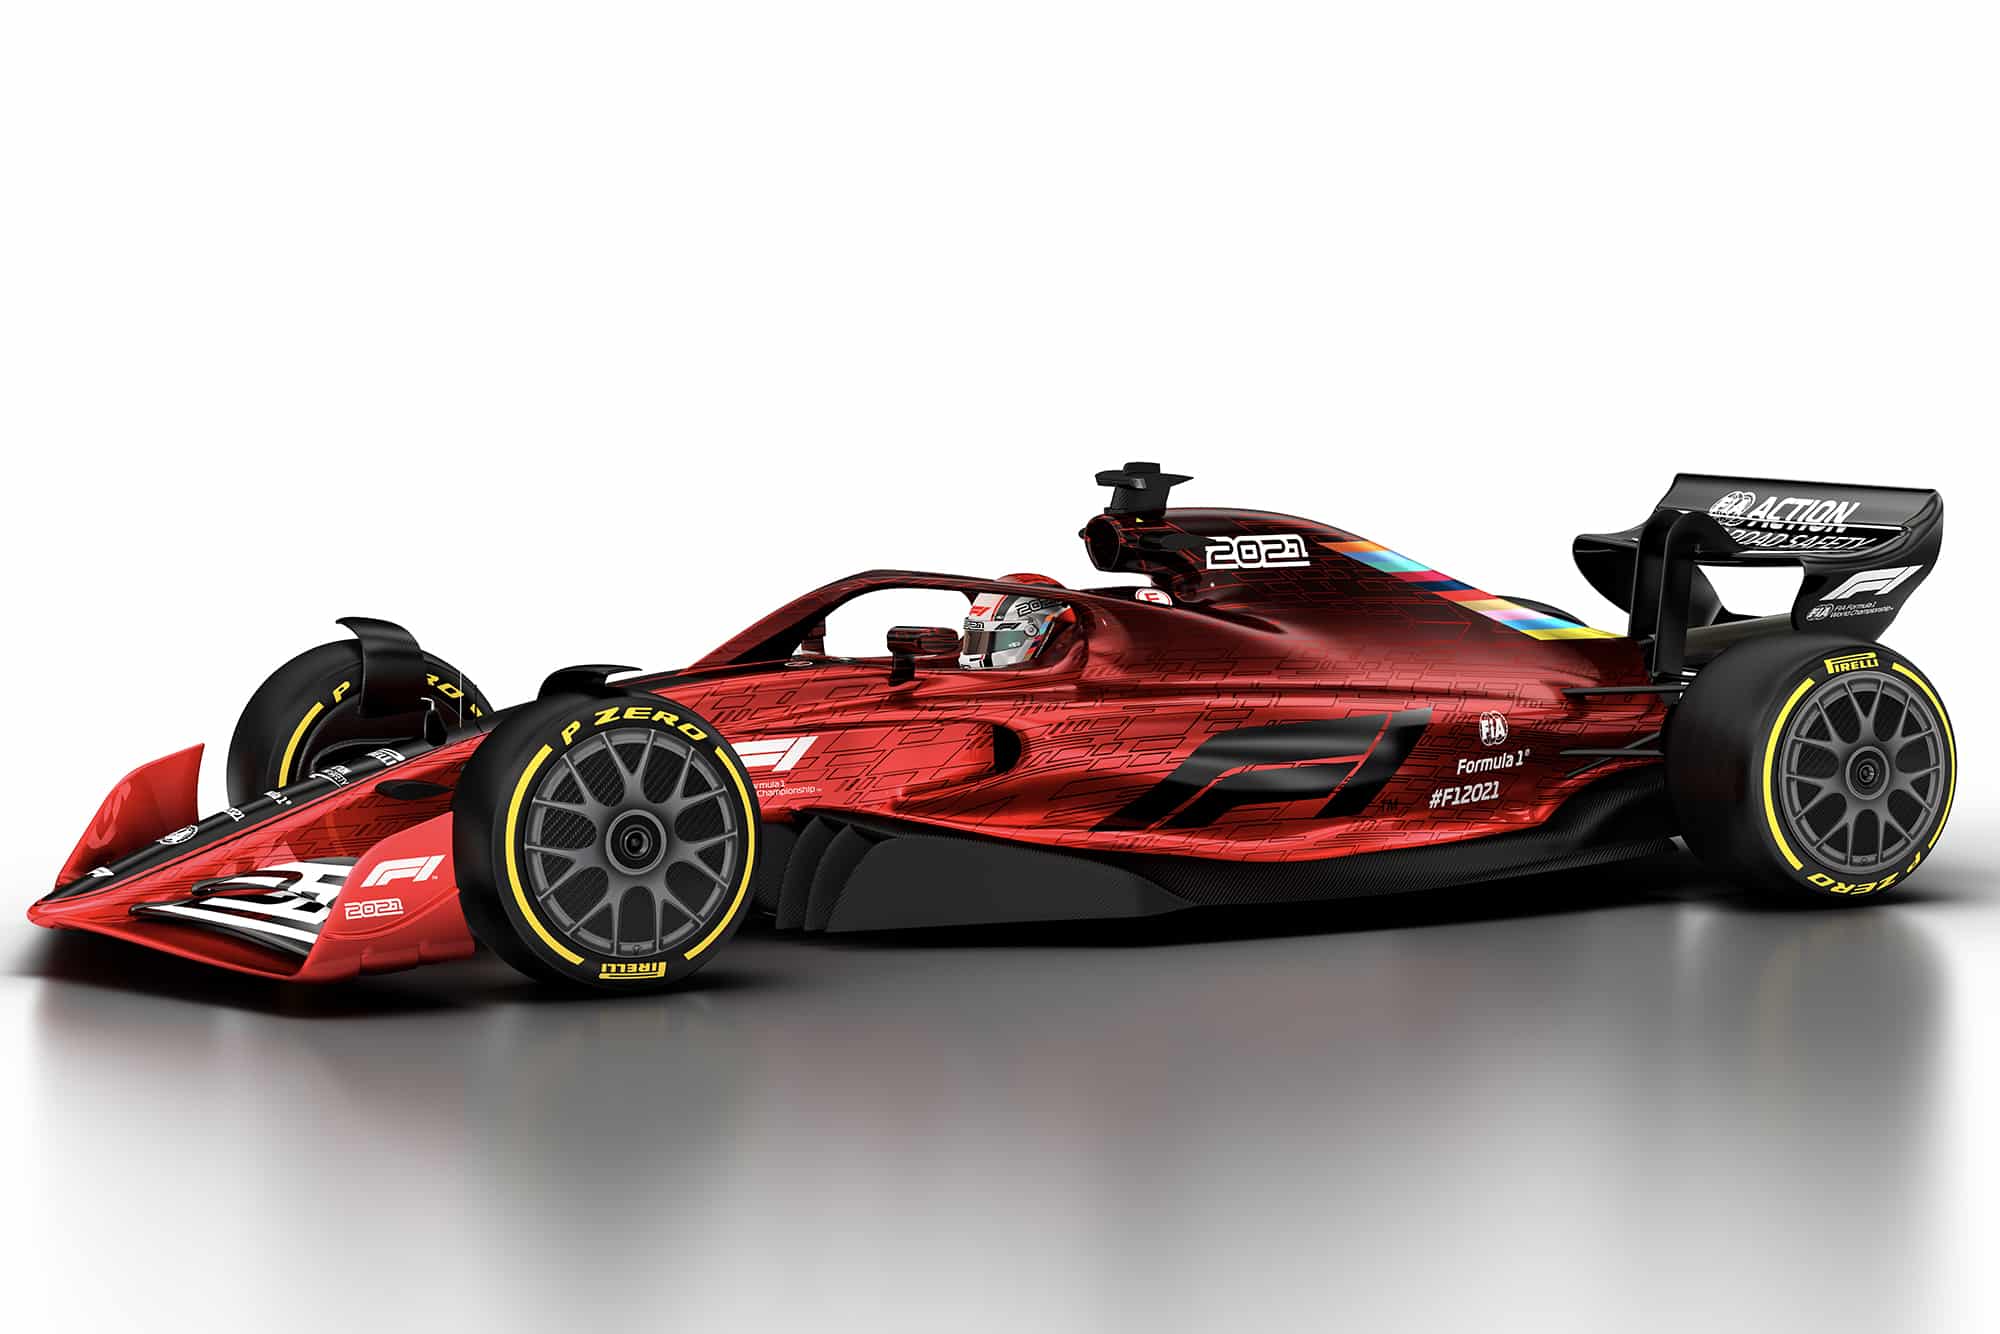 F1 2021 regulation car